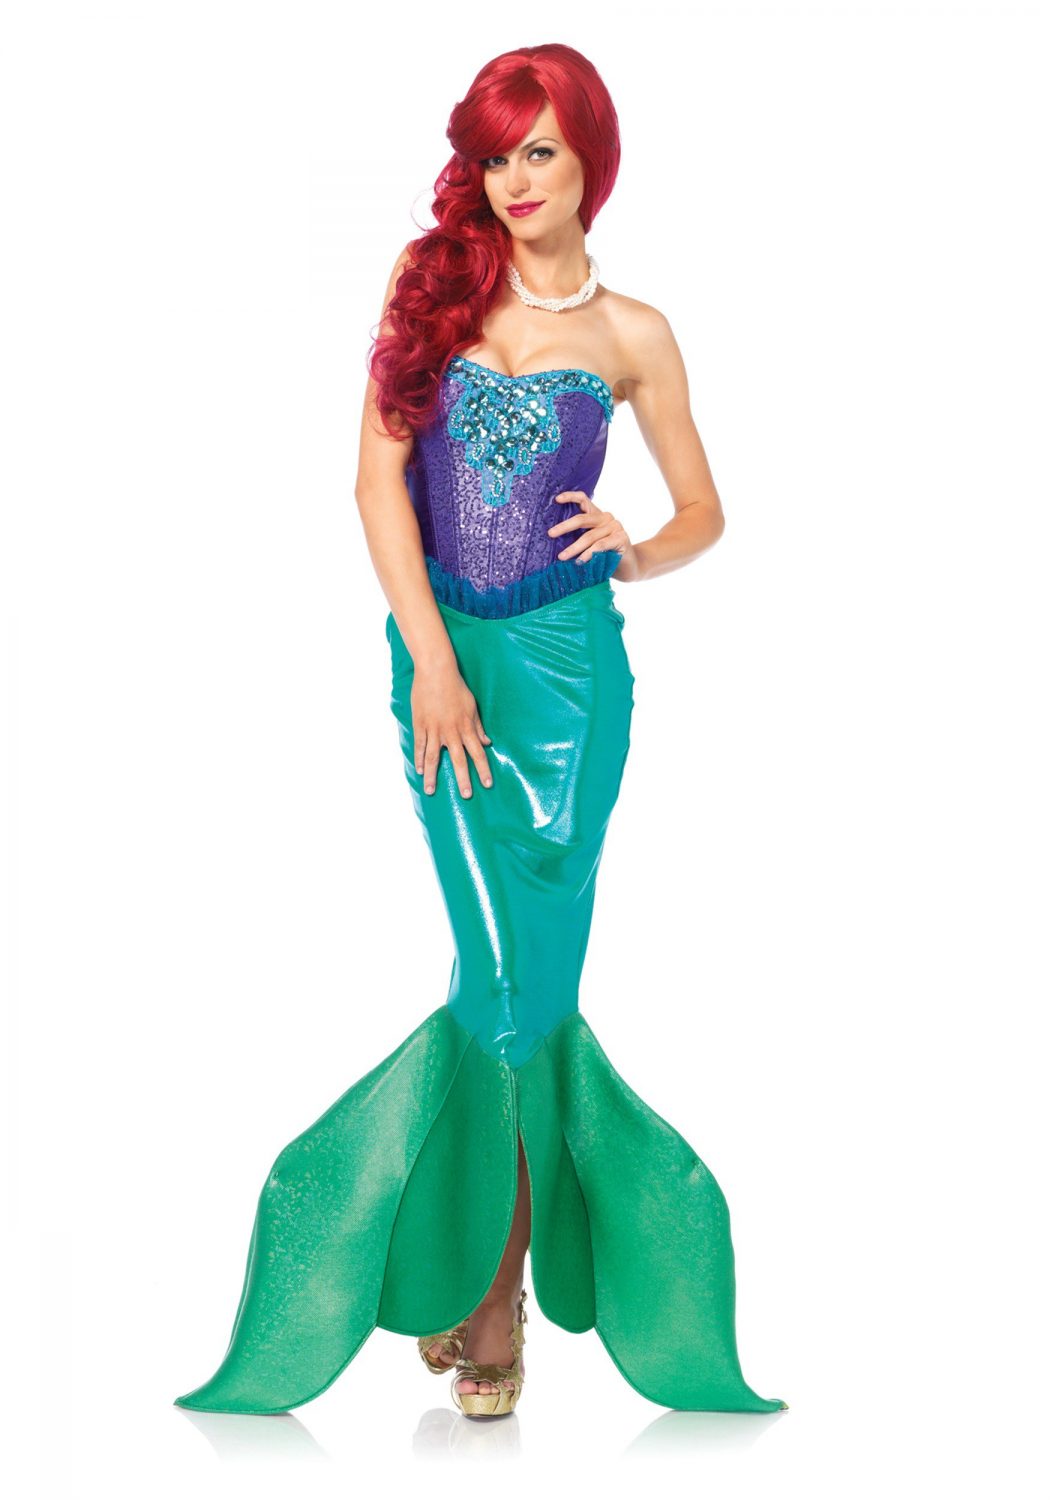 Mermaid2 Top 10 Teenagers Halloween Costumes Trends in 2021